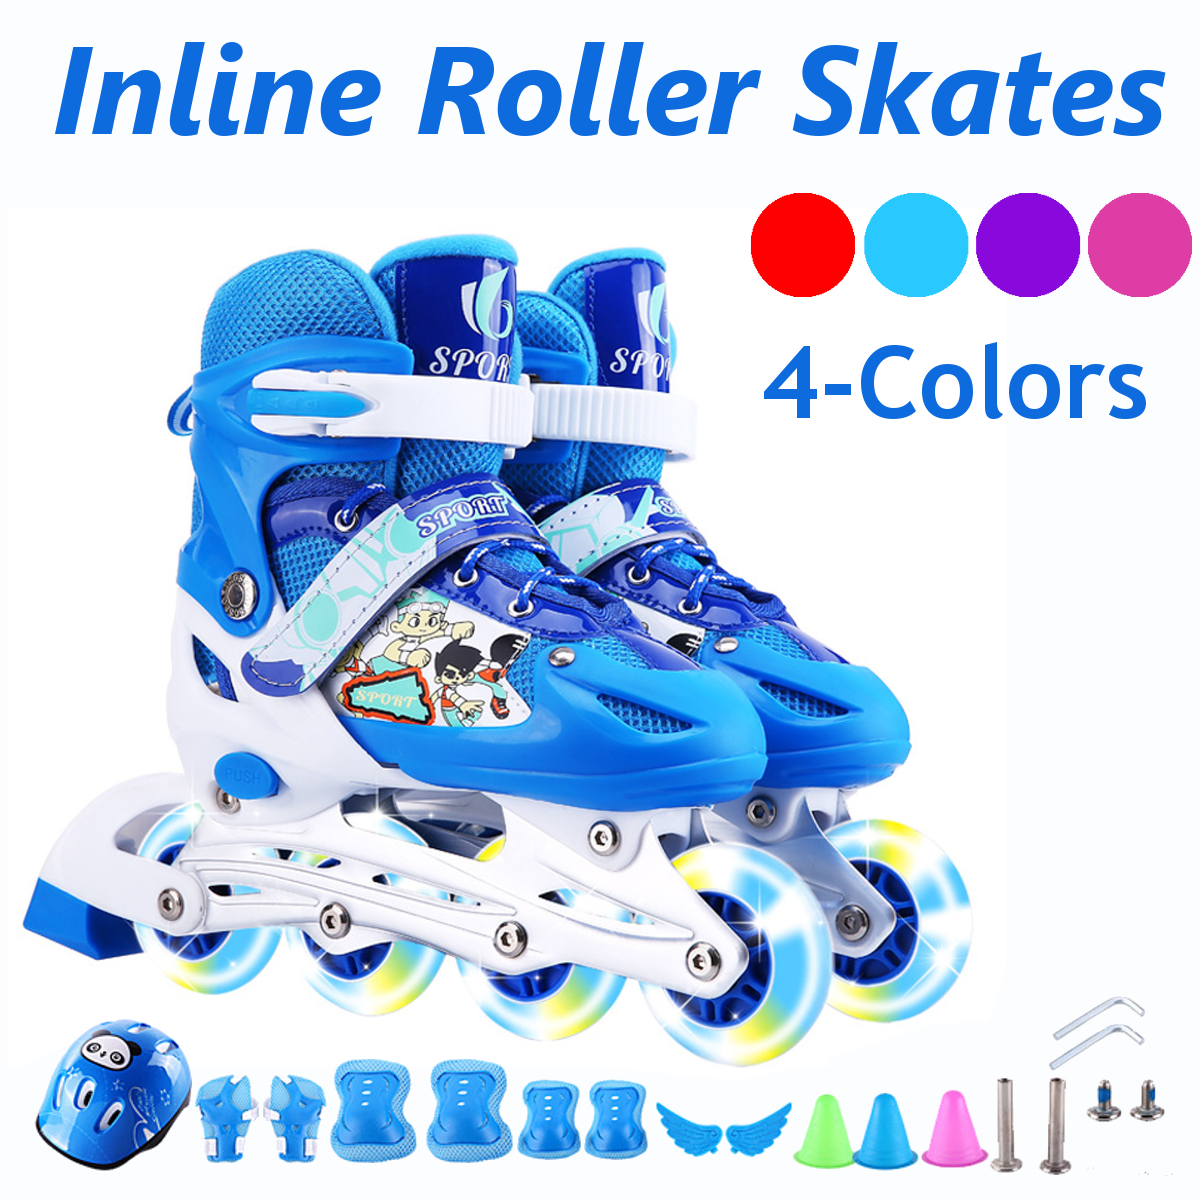 3-Sizes-Adjustable-Inline-Skates-Set-with-LED-Flashing-Wheels-Safe-Roller-Light-Up-Illuminating-Whee-1826045-1